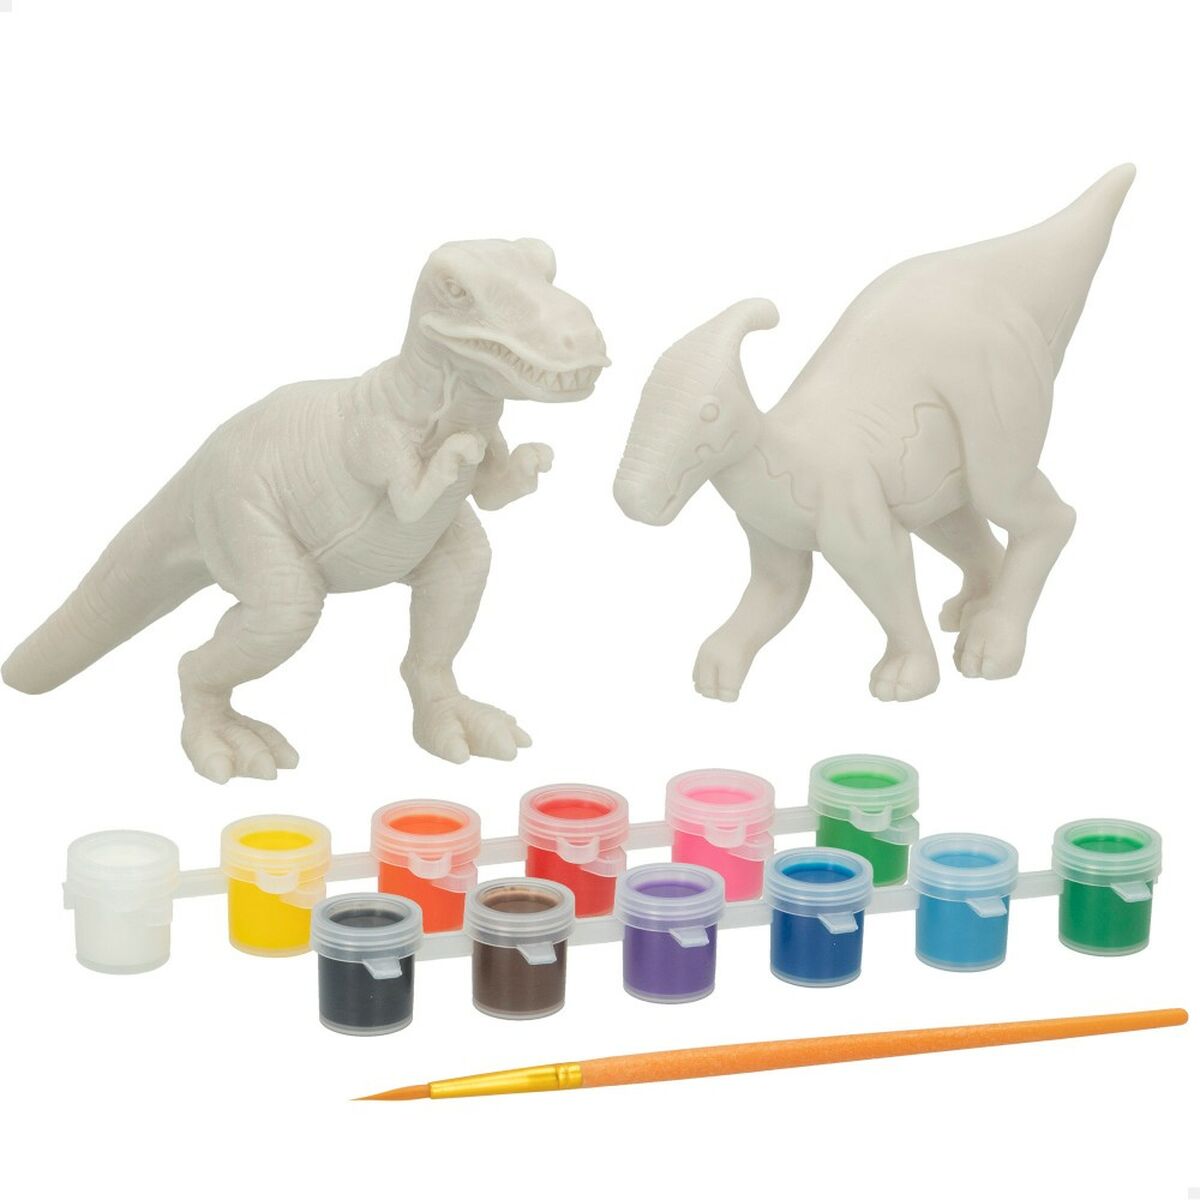 Käsityöpeli PlayGo 15 Kappaletta Dinosaurukset (6 osaa)